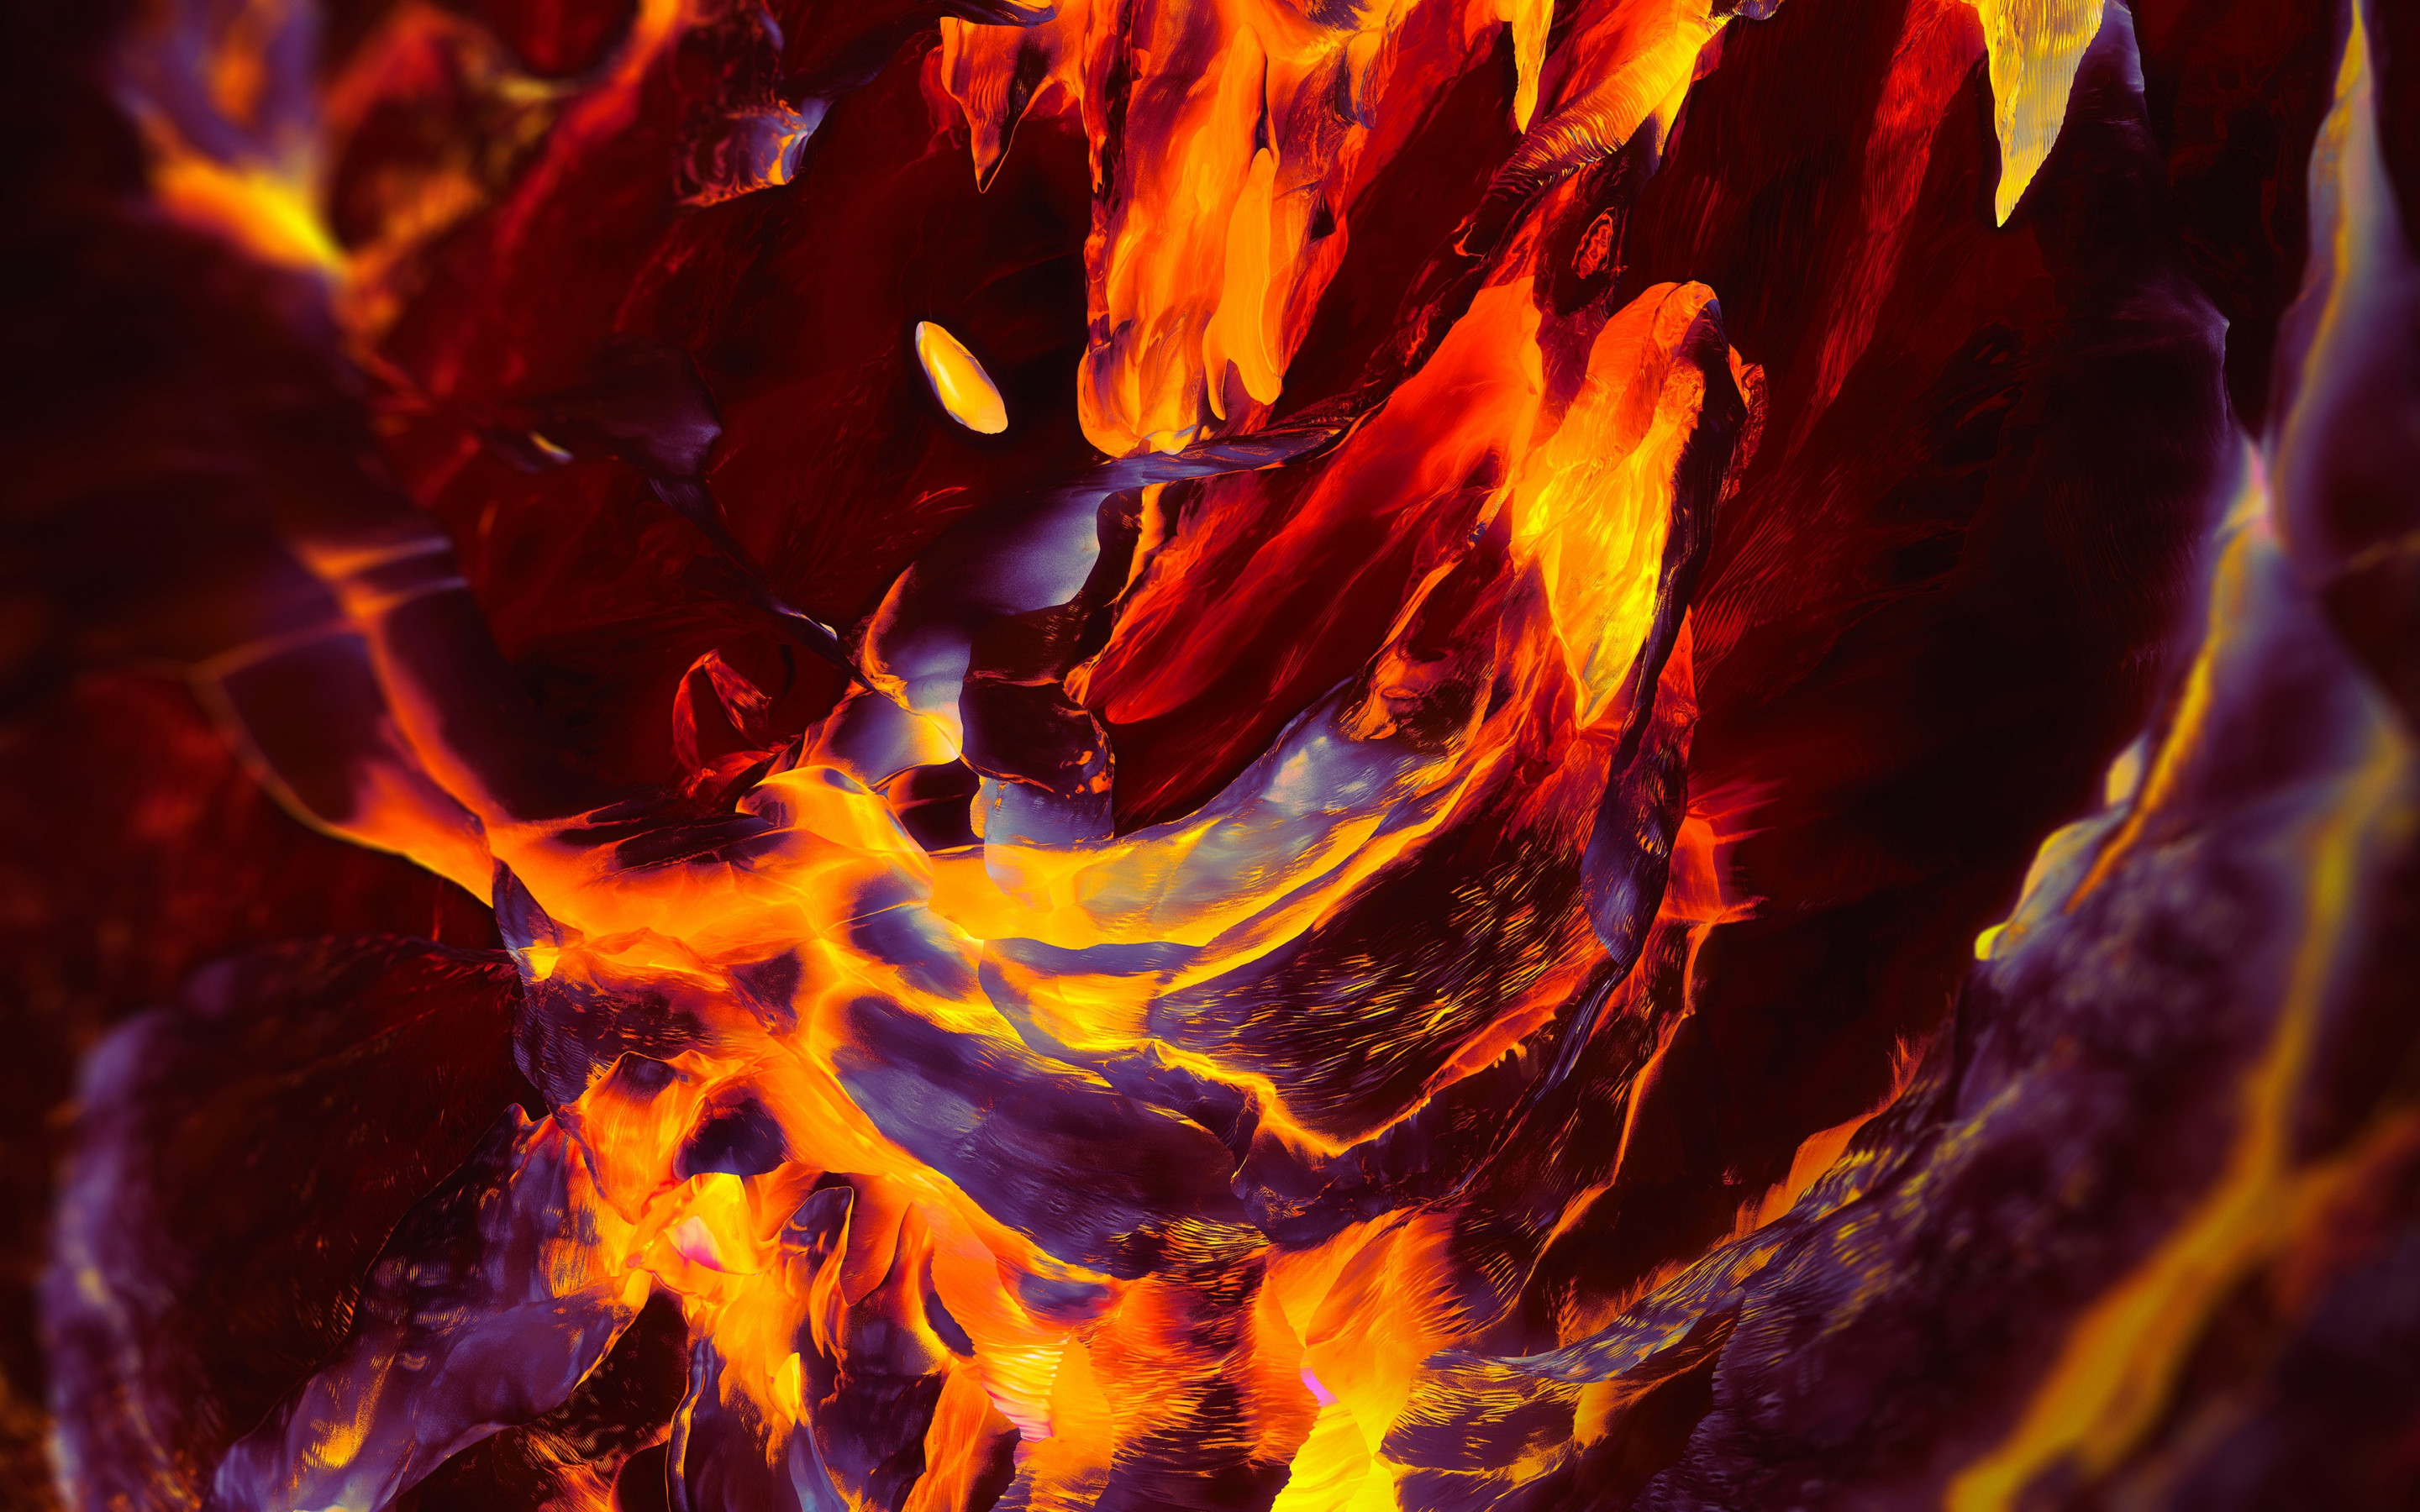 OnePlus Fire wallpaper 2880x1800